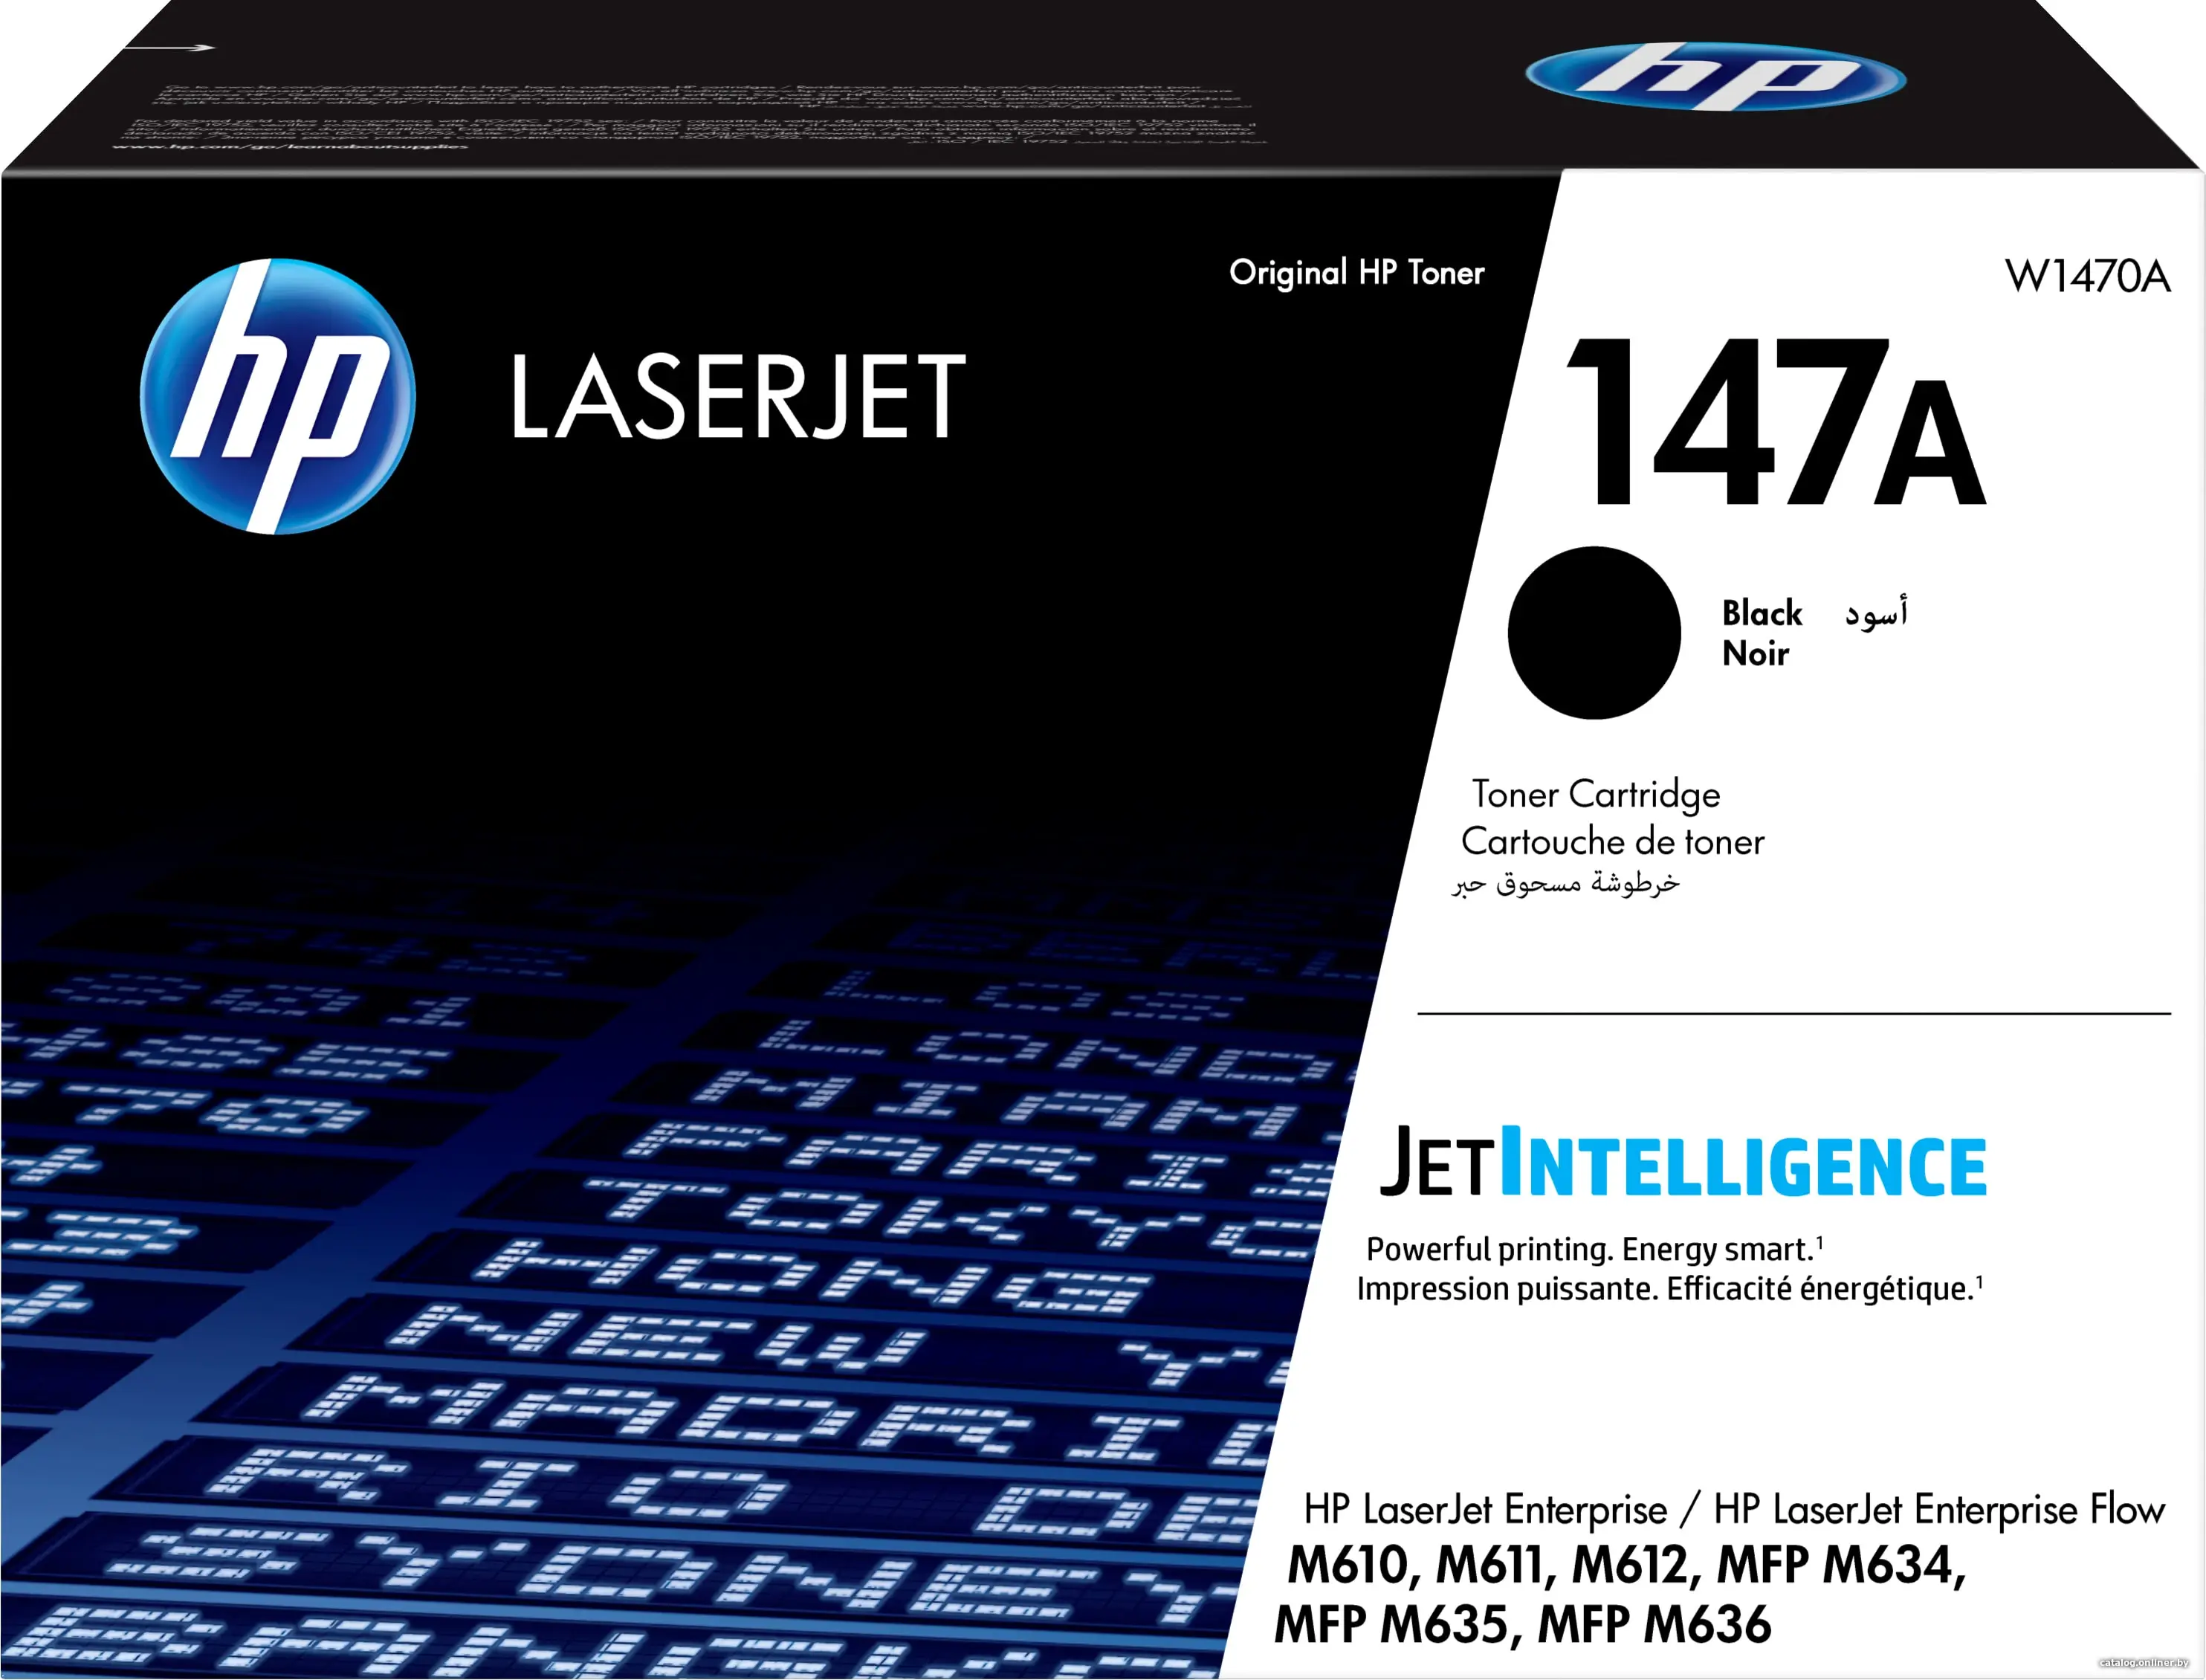 Купить HP 147A Black LaserJet Toner Cartridge черный лазерный картридж, цена, опт и розница